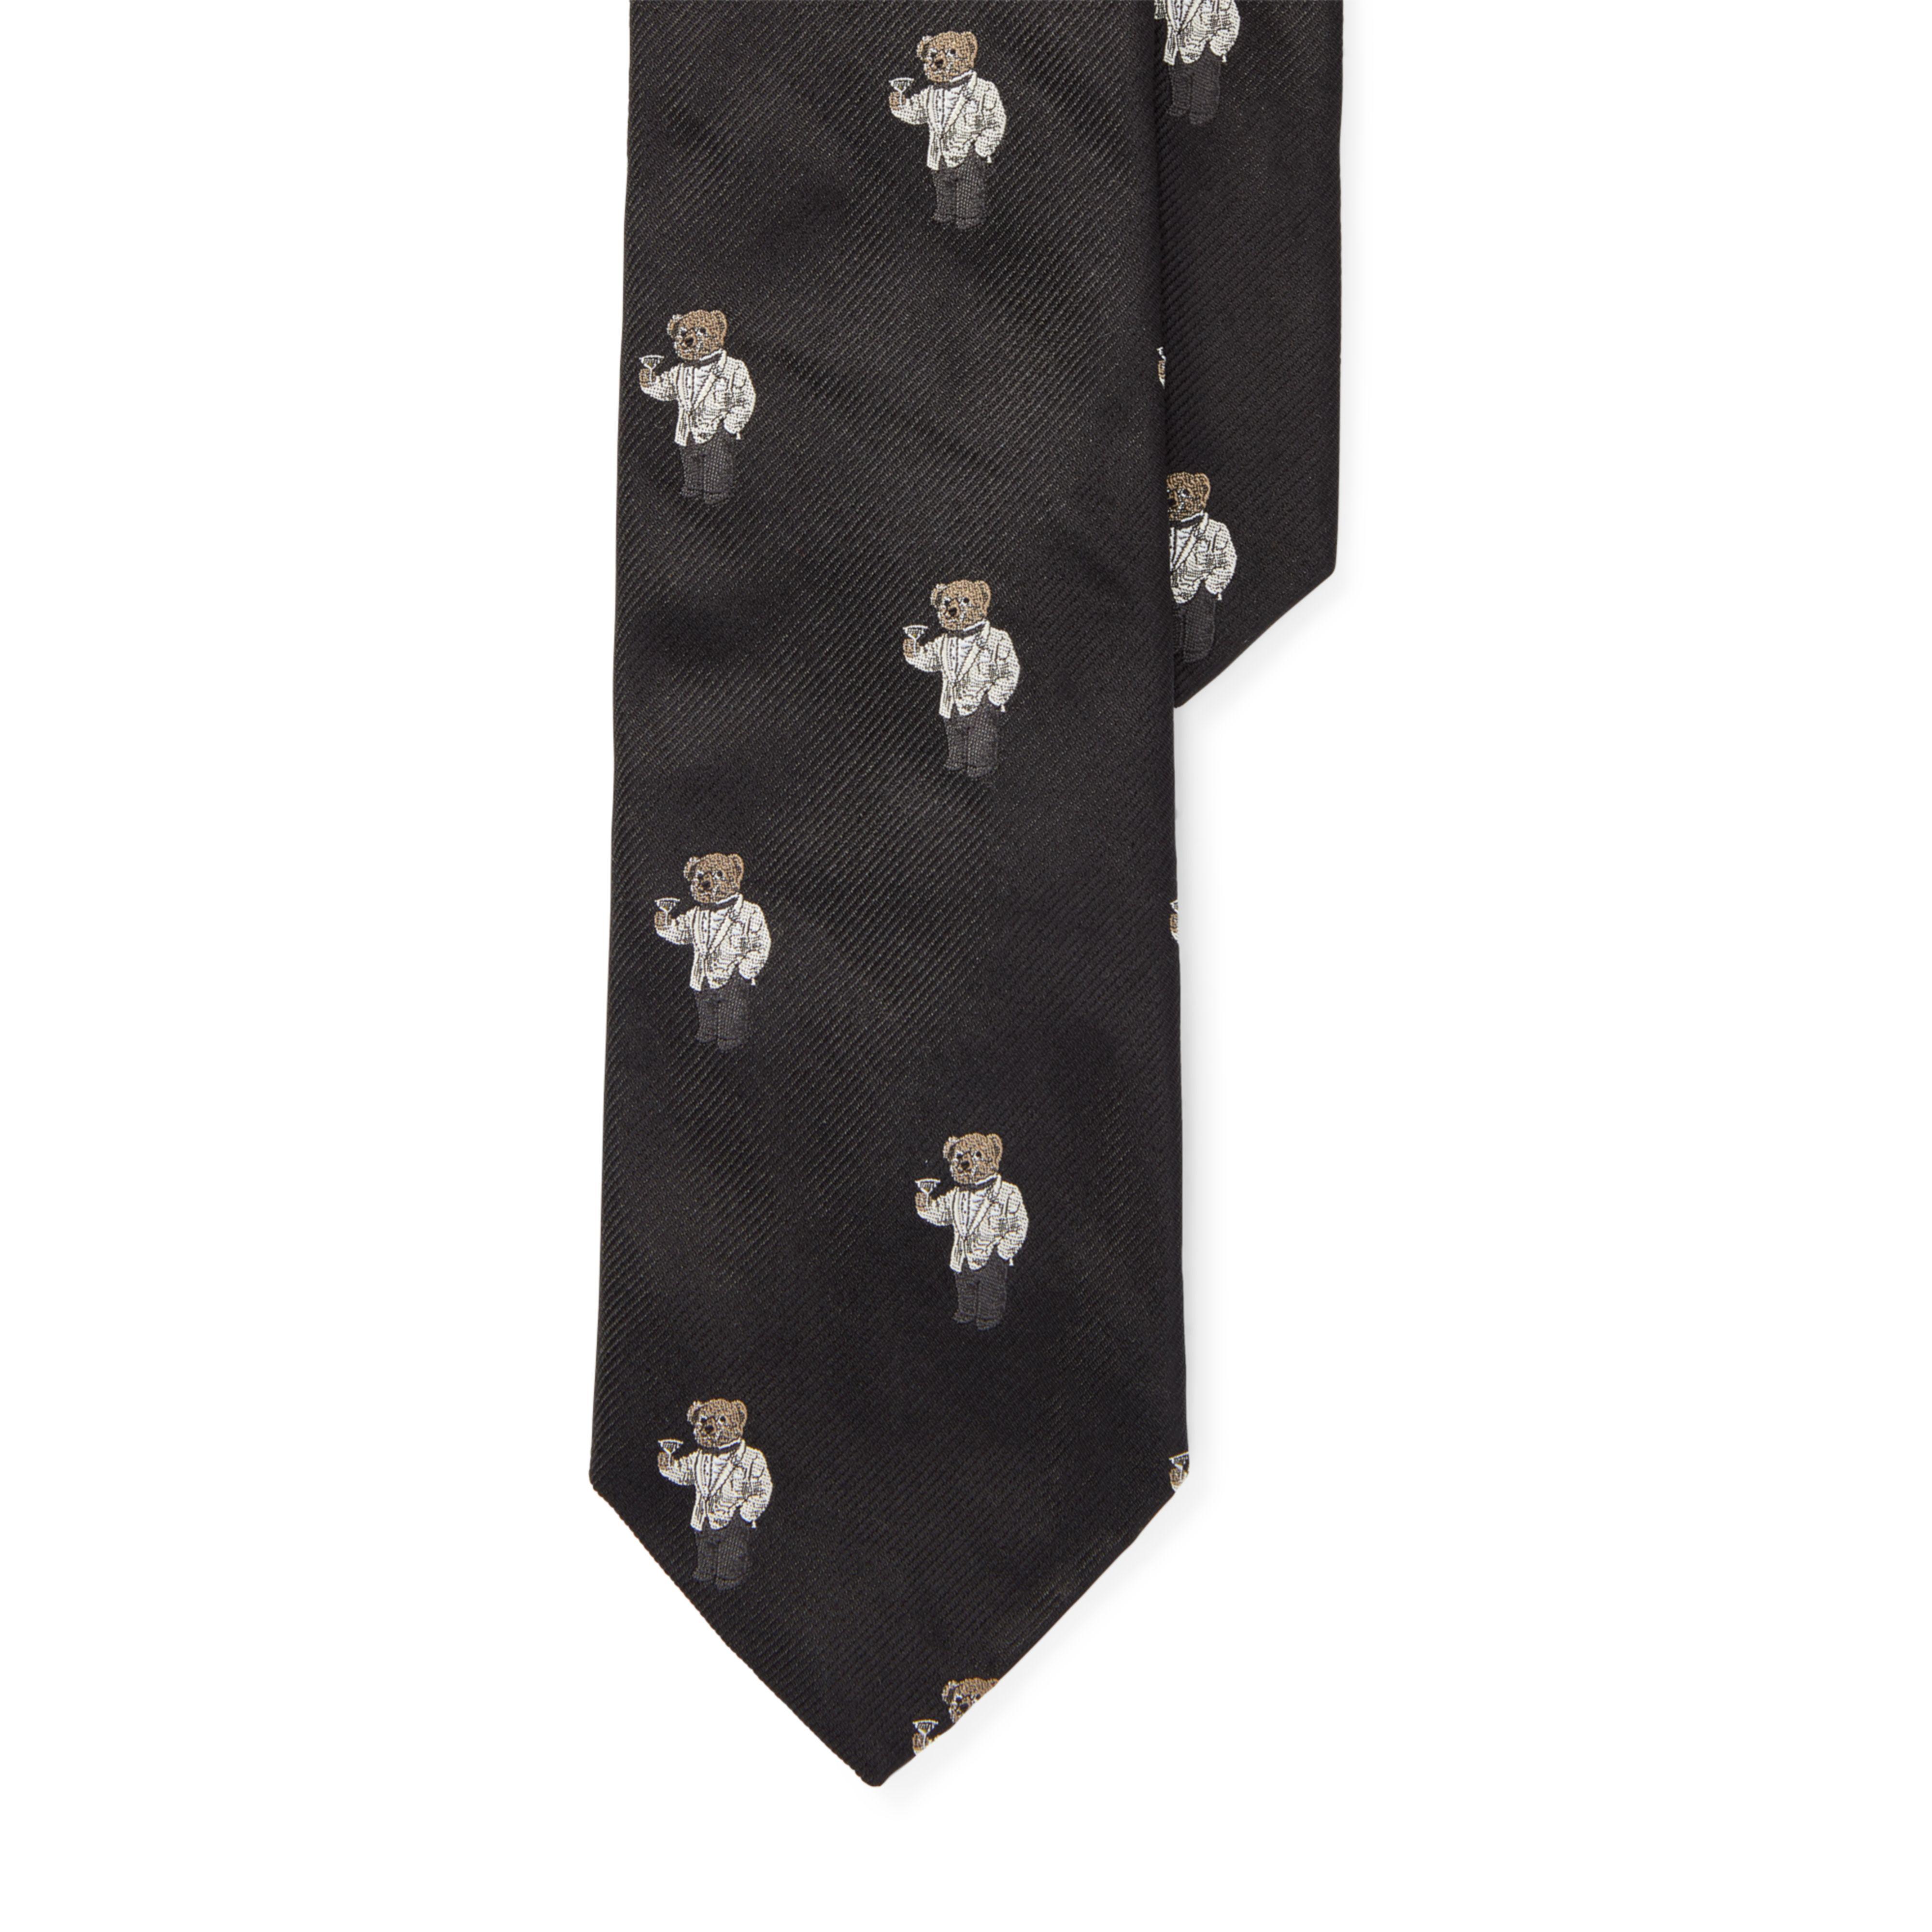 polo bear tie